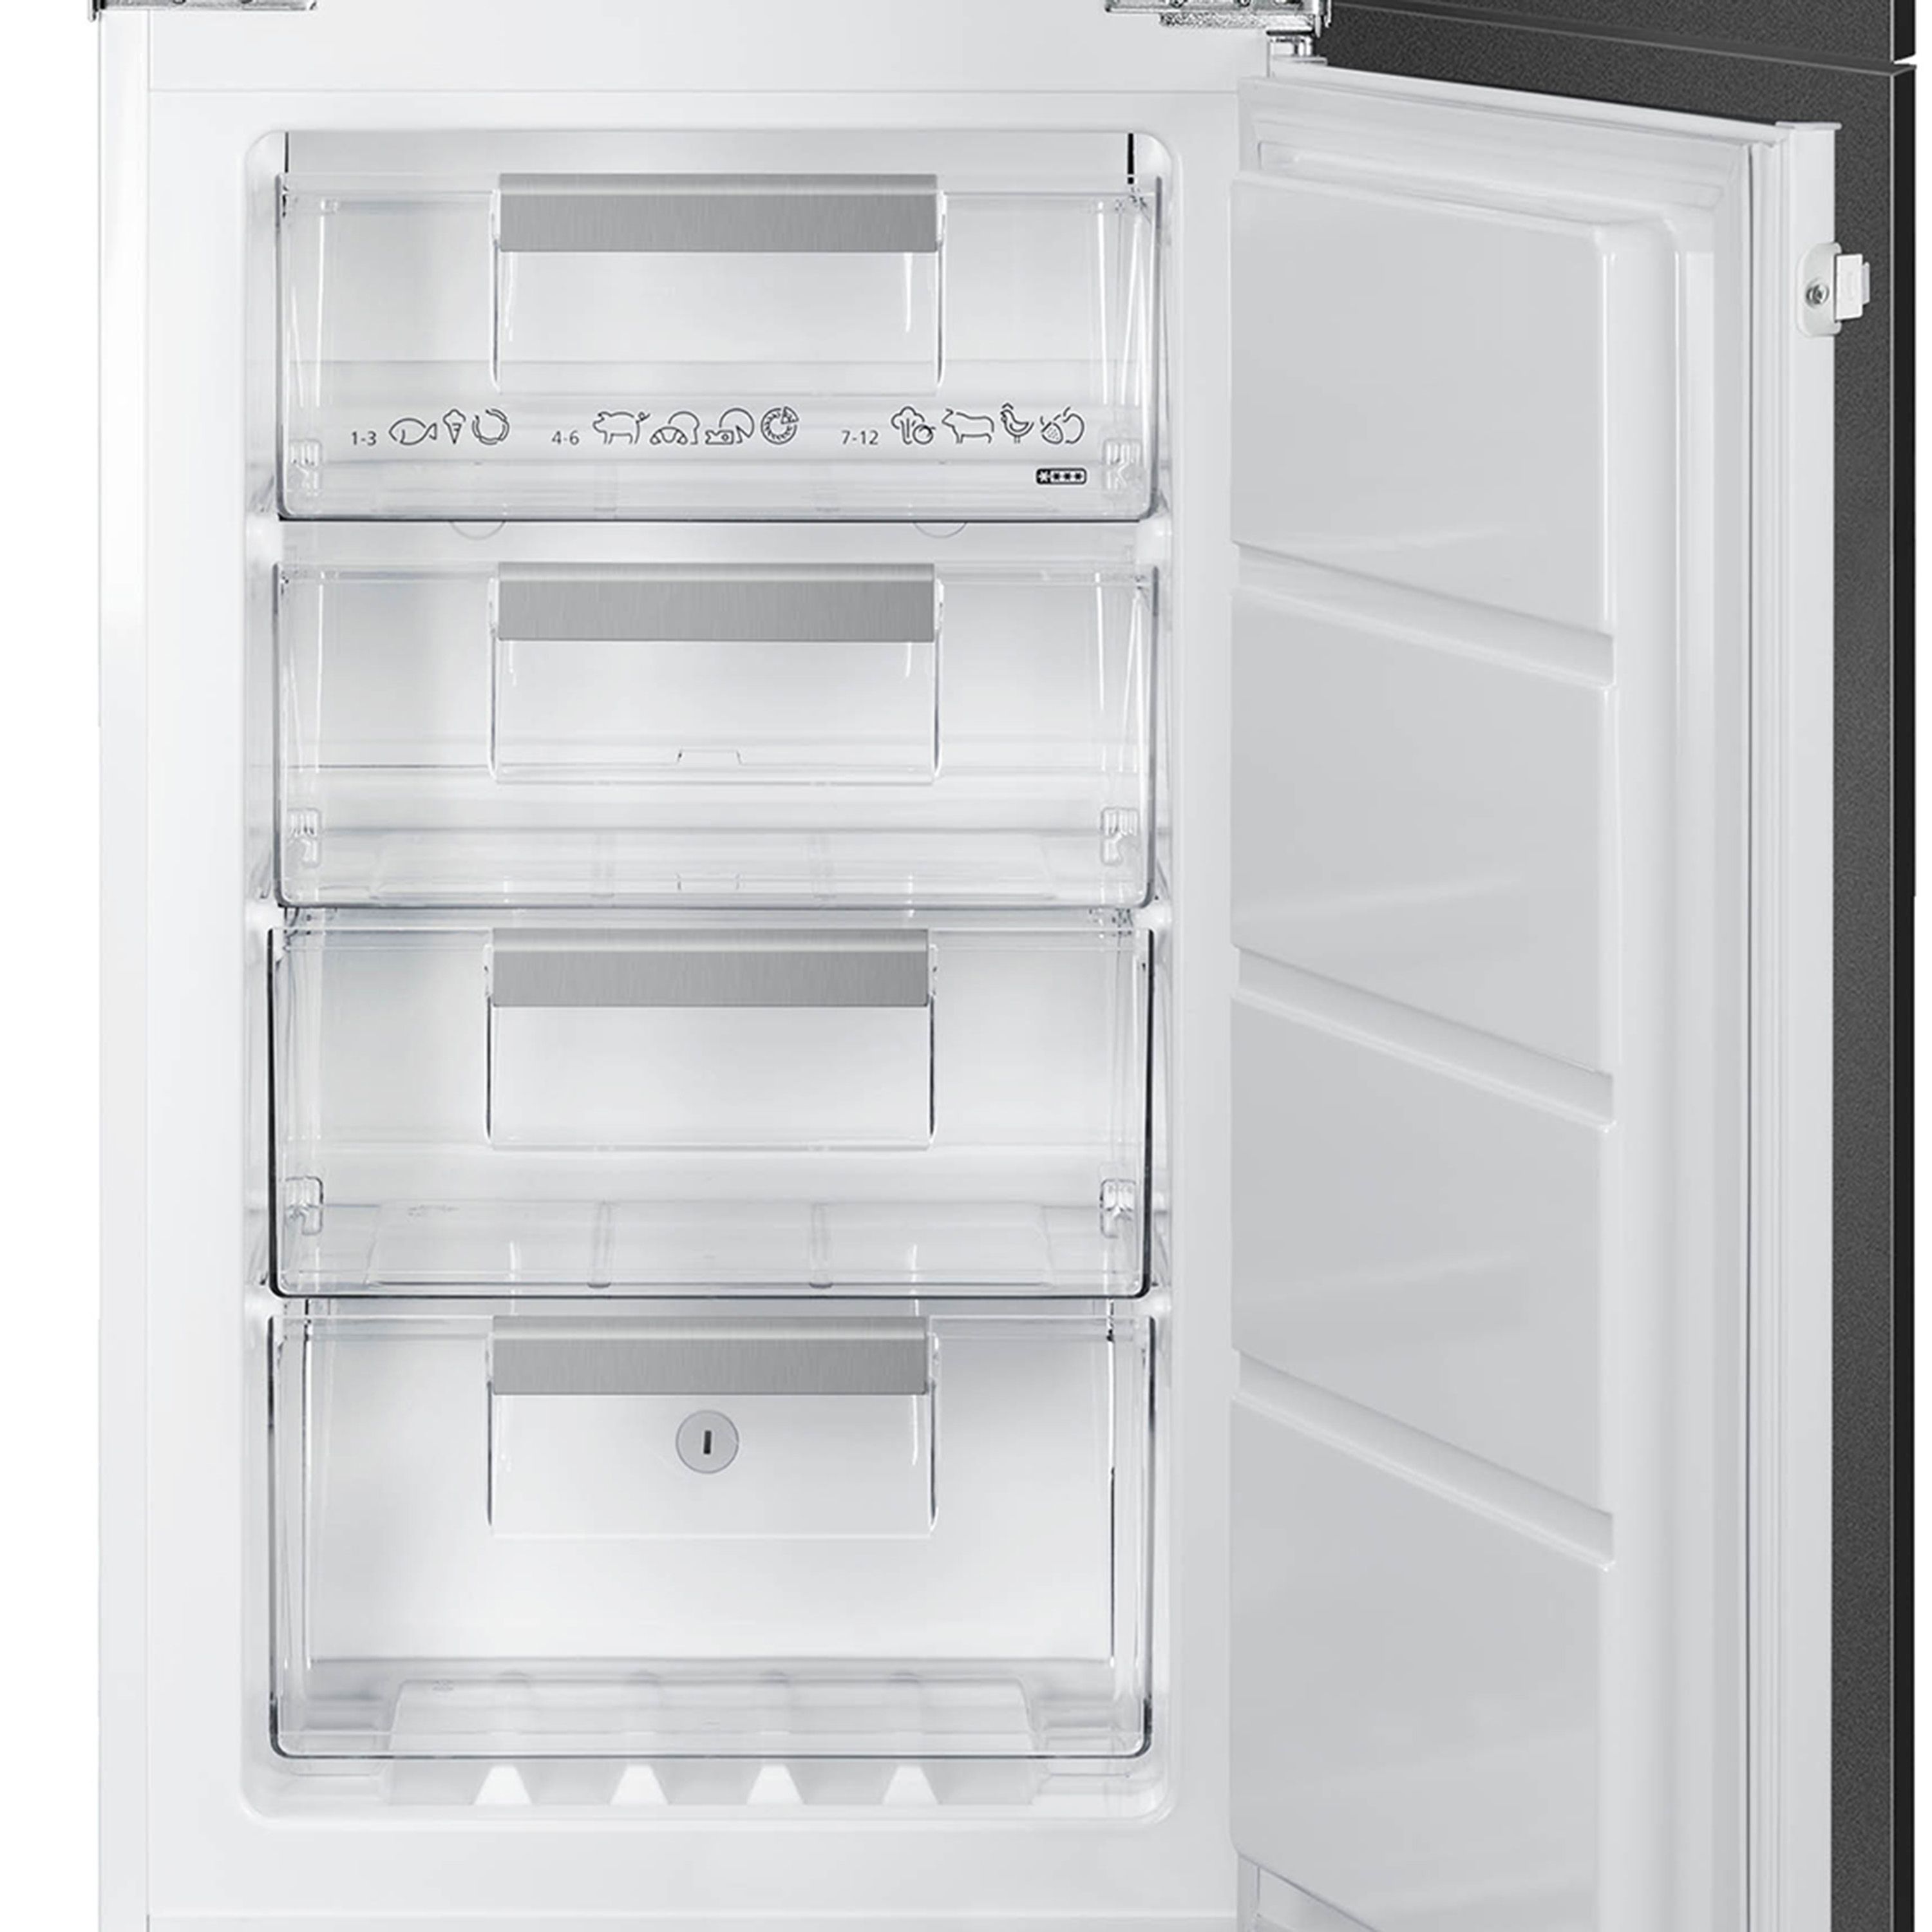 Smeg UKC8174NF_WH 50:50 Built-in Frost free Fridge freezer - White